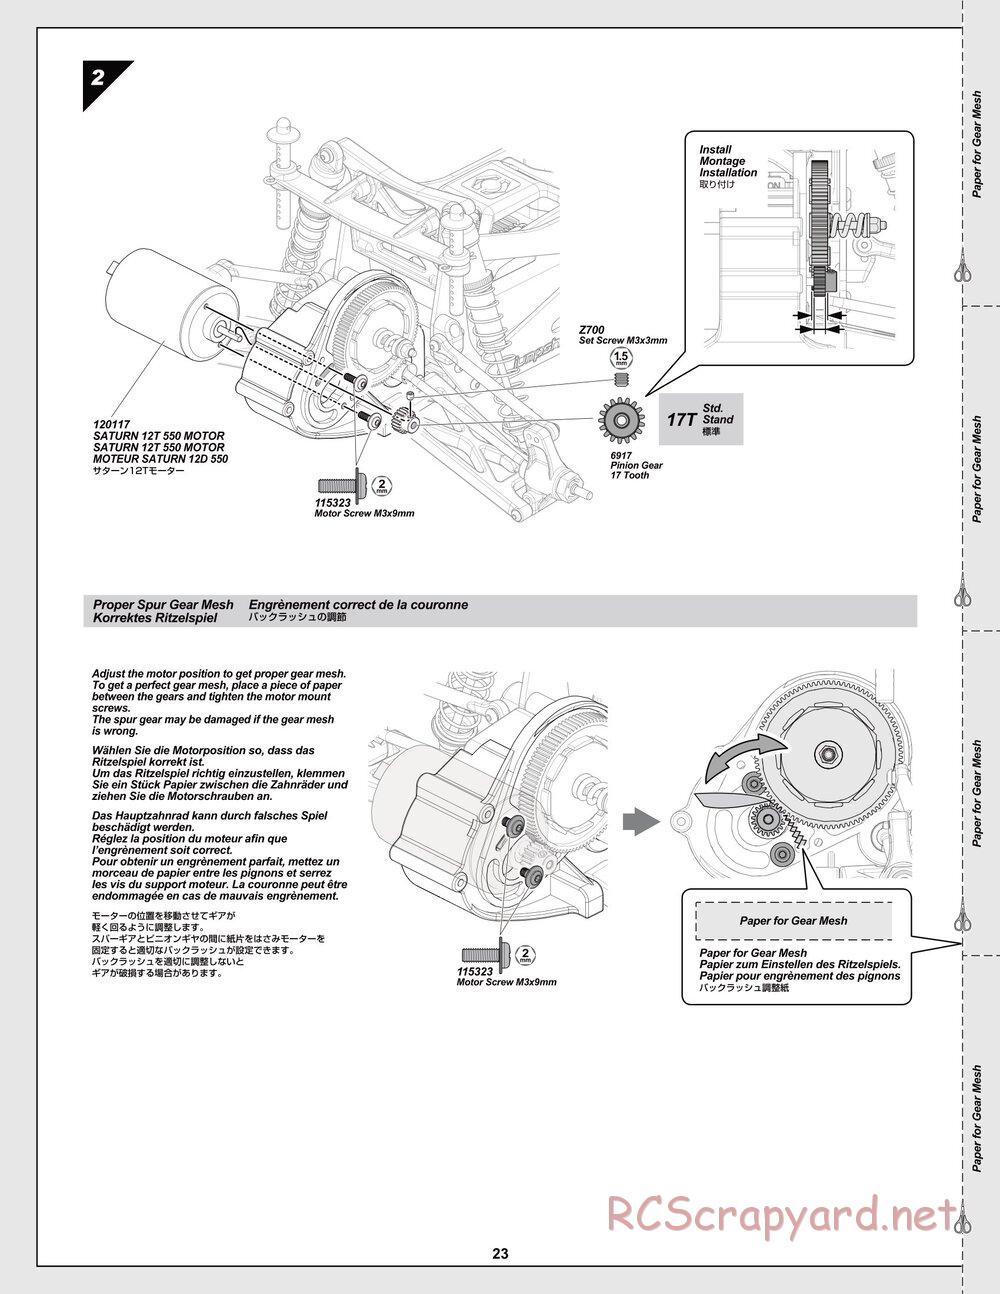 HPI - Jumpshot SC / ST V2 - Manual - Page 23